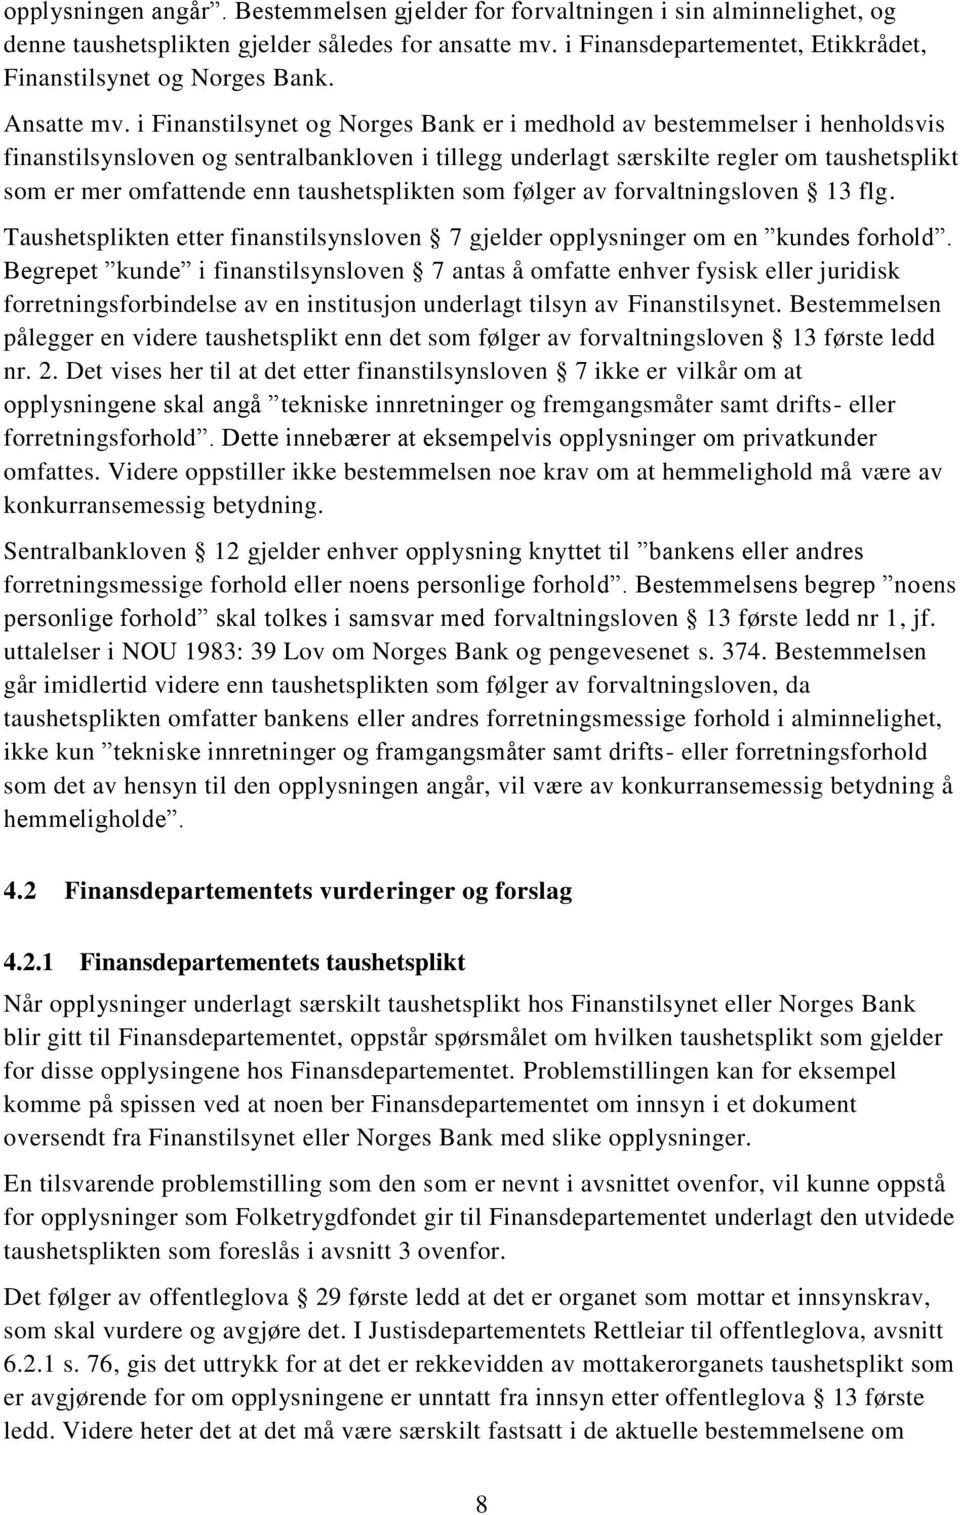 i Finanstilsynet og Norges Bank er i medhold av bestemmelser i henholdsvis finanstilsynsloven og sentralbankloven i tillegg underlagt særskilte regler om taushetsplikt som er mer omfattende enn